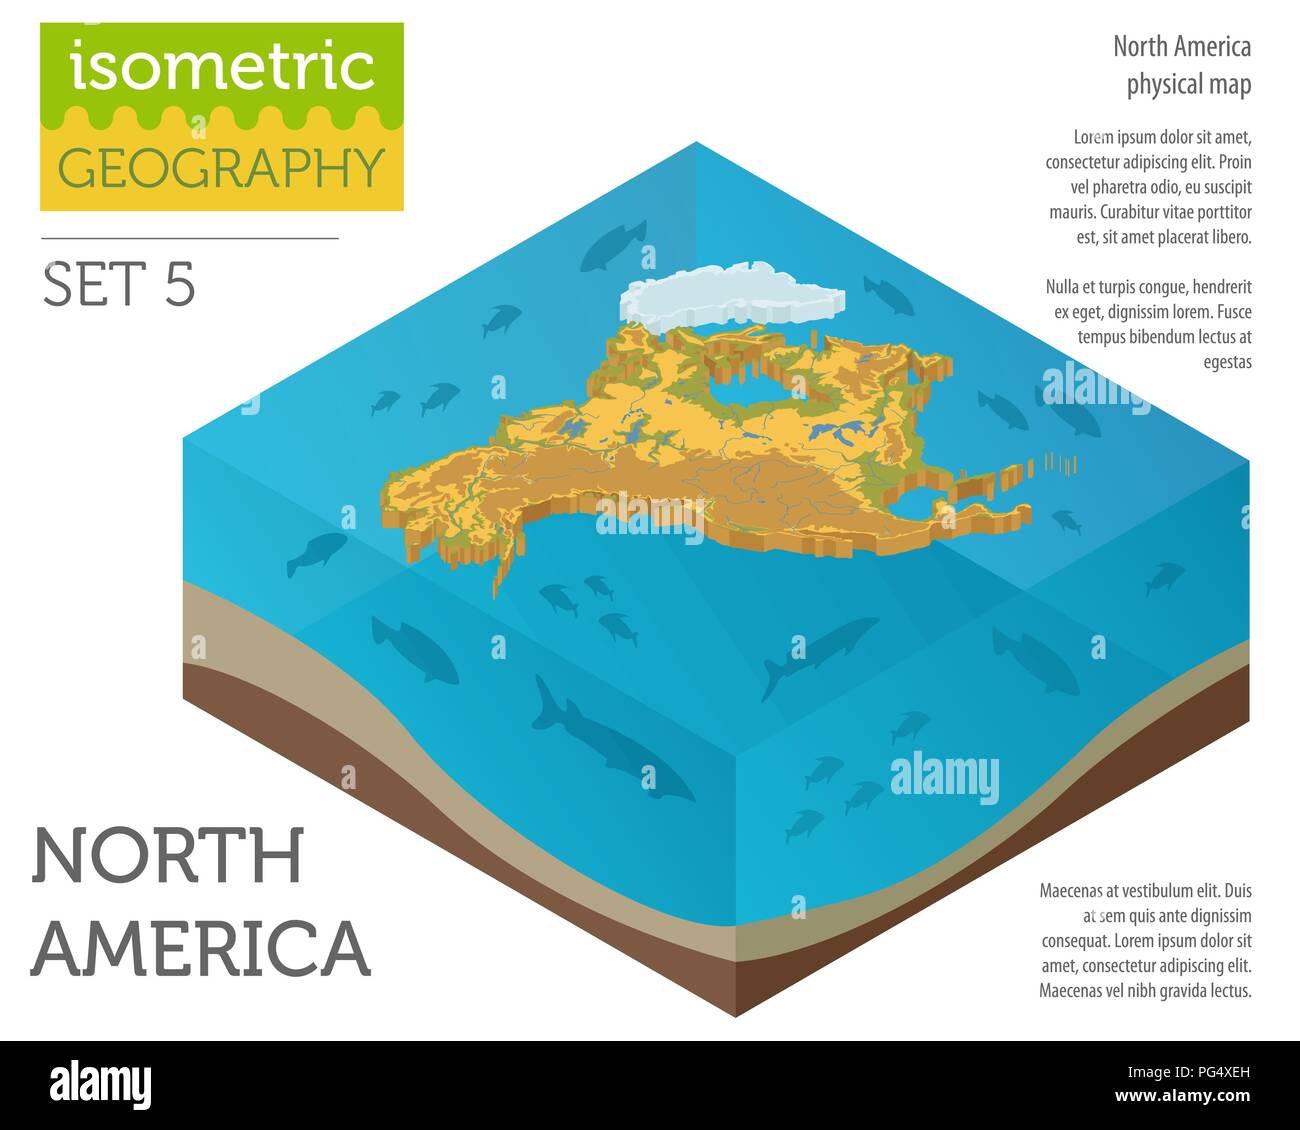 Isometrische 3d-Nordamerika physische Karte Elemente. Ihre eigene Geographie info Graphische Sammlung aufzubauen. Vector Illustration Stock Vektor